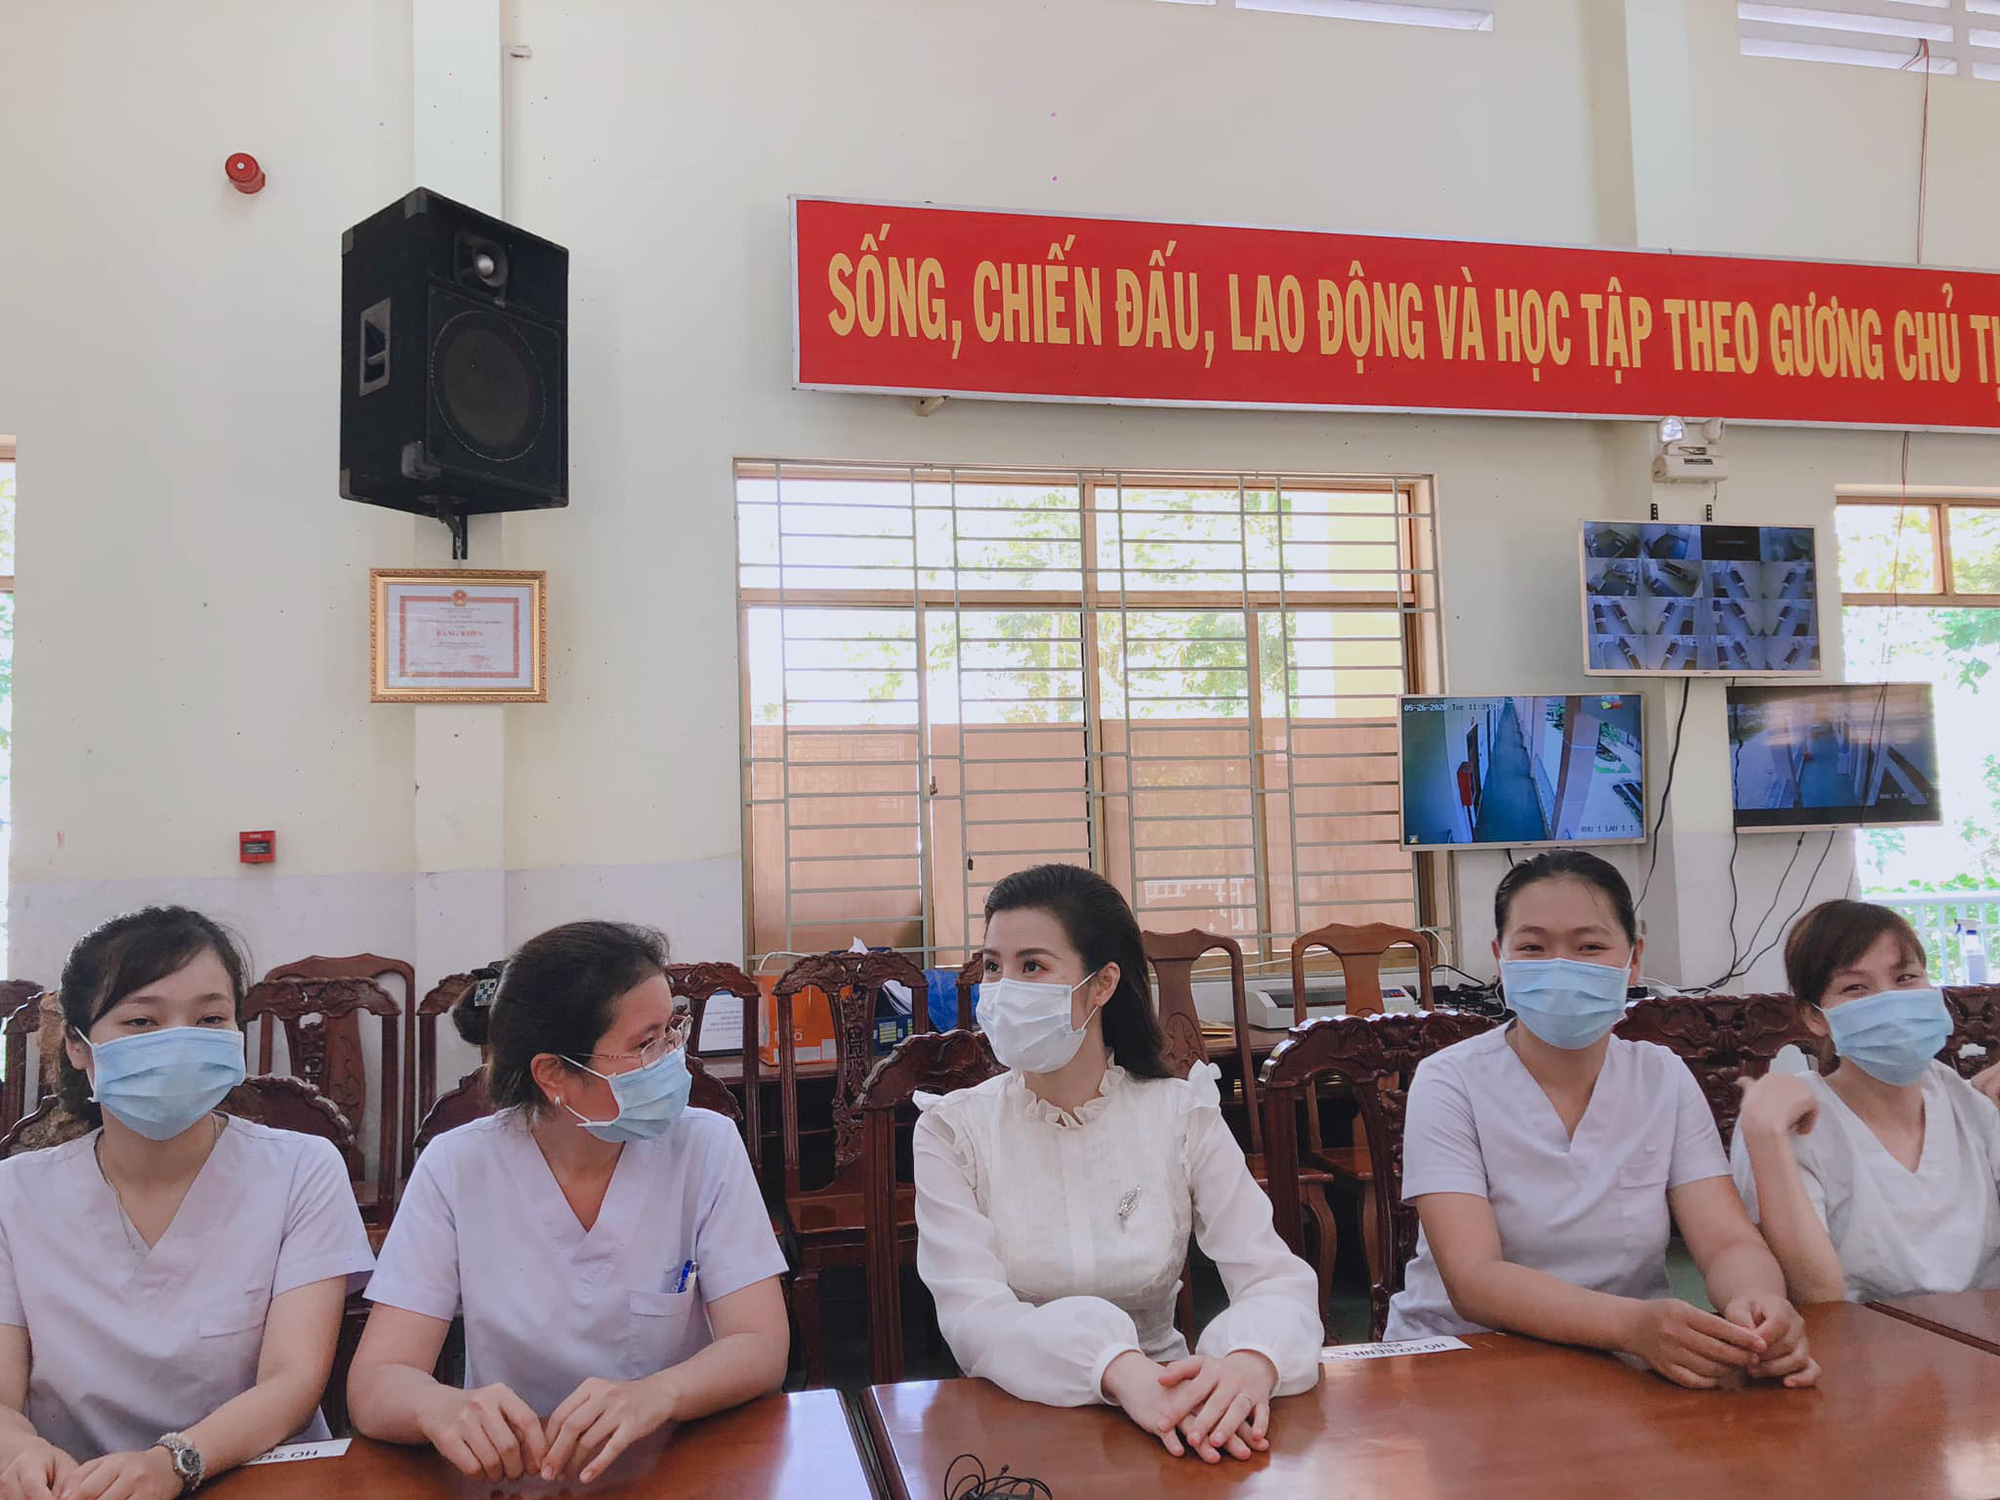 Đang bầu bì tháng thứ 4, Đông Nhi vẫn cùng Ông Cao Thắng đi bệnh viện Dã Chiến Củ Chi thăm hỏi đội ngũ y bác sĩ - Ảnh 4.